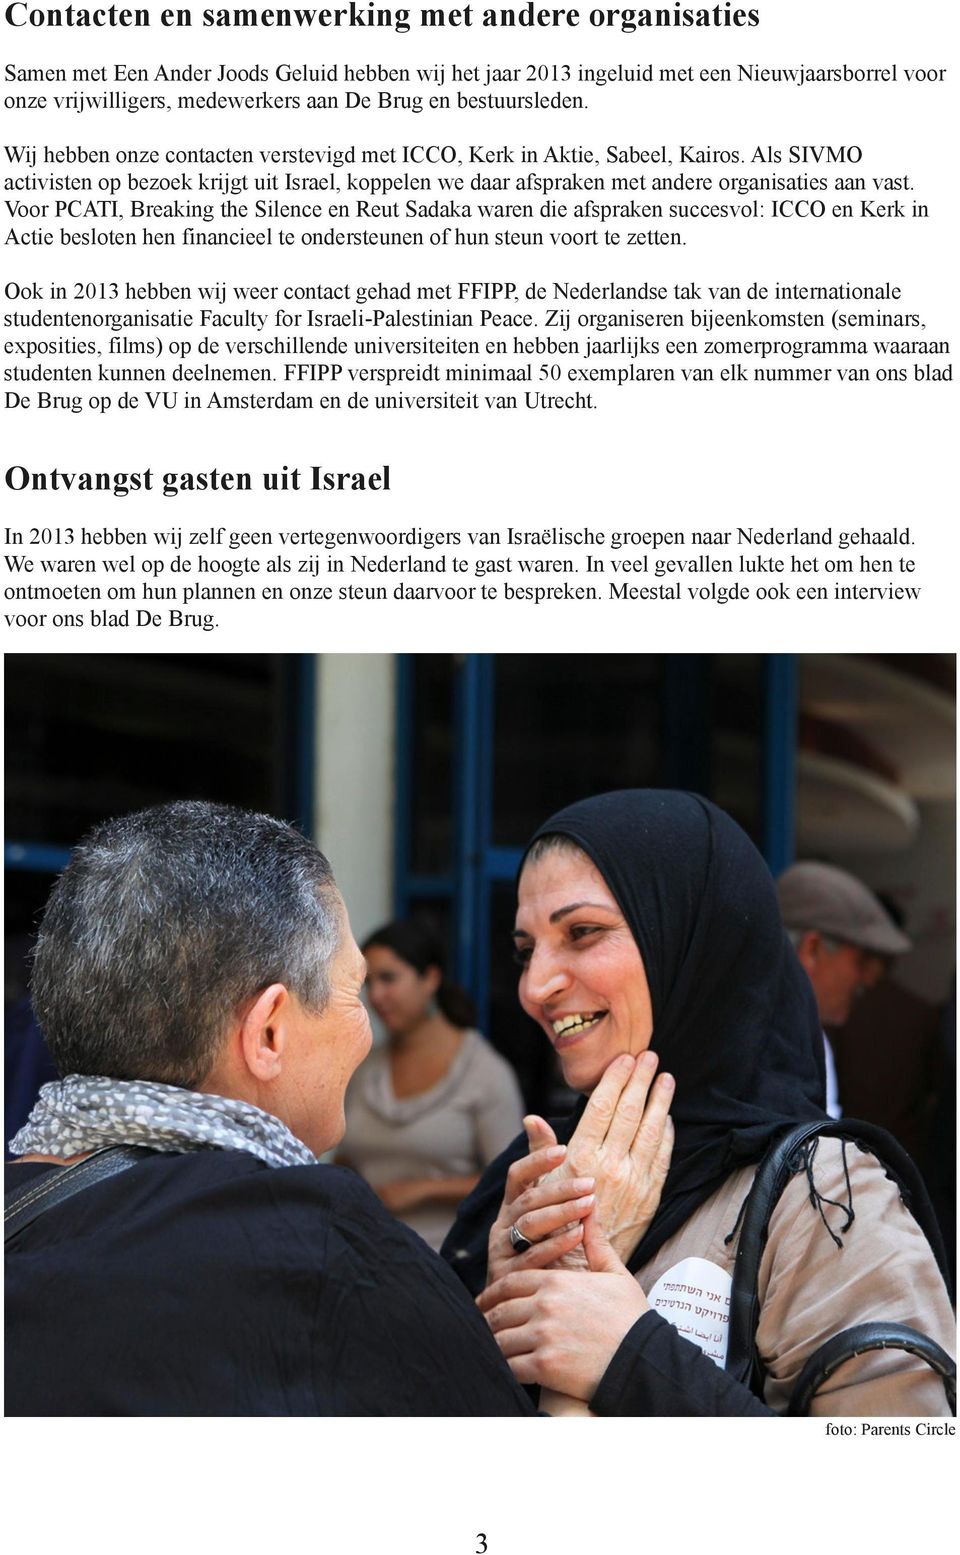 Als SIVMO activisten op bezoek krijgt uit Israel, koppelen we daar afspraken met andere organisaties aan vast.